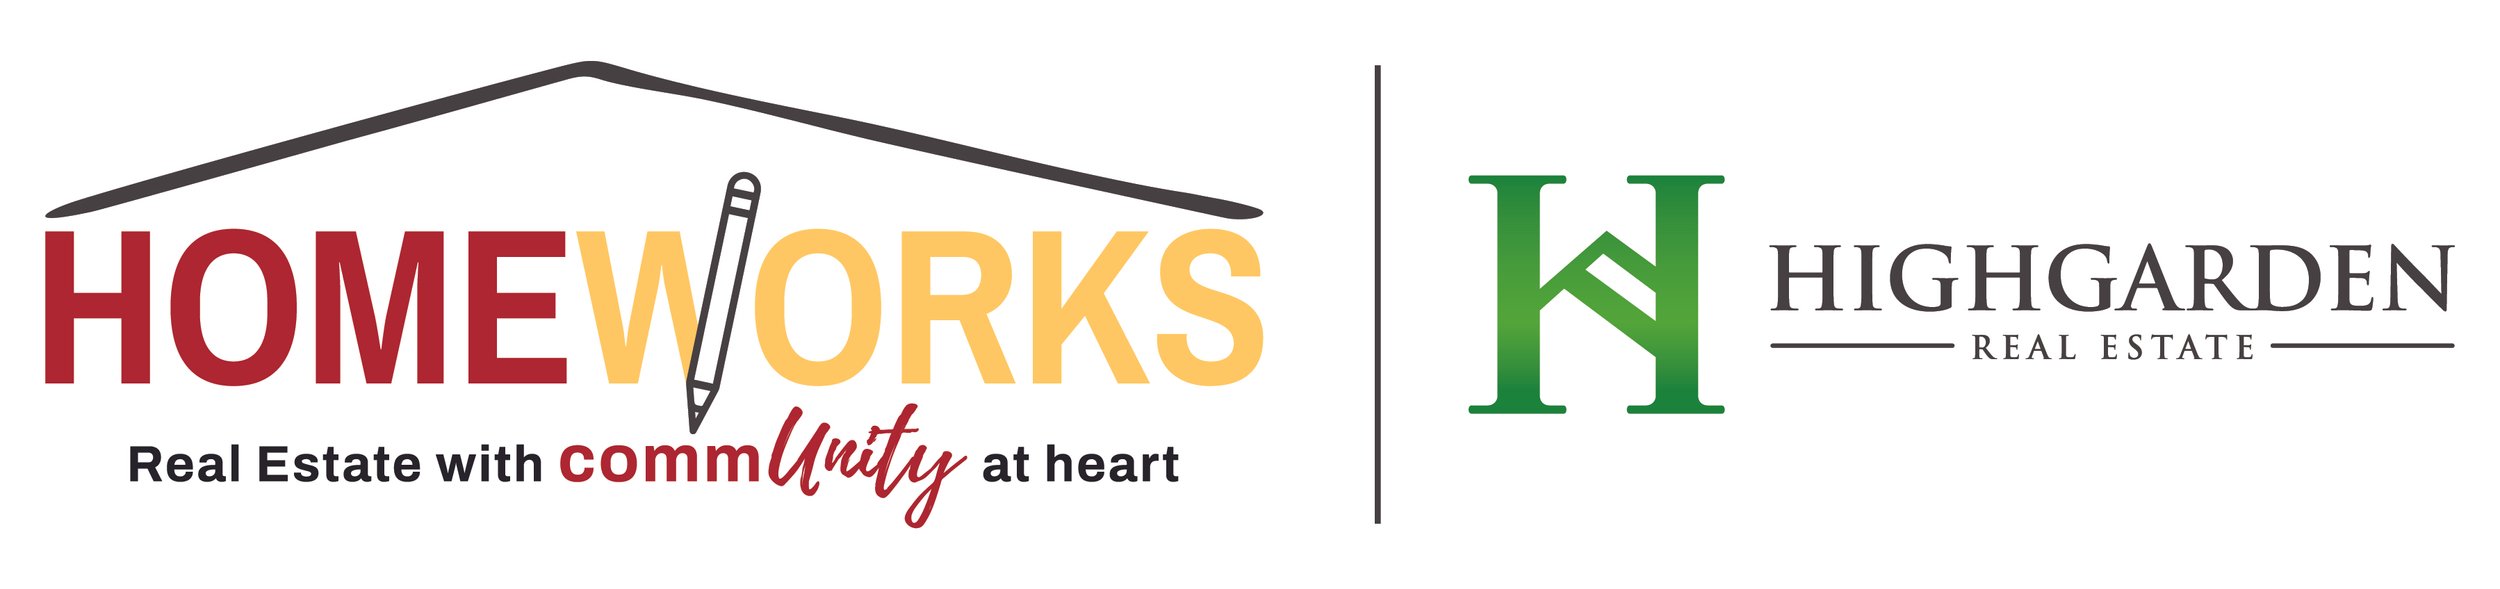 HomeWorks HighGarden logo.jpg